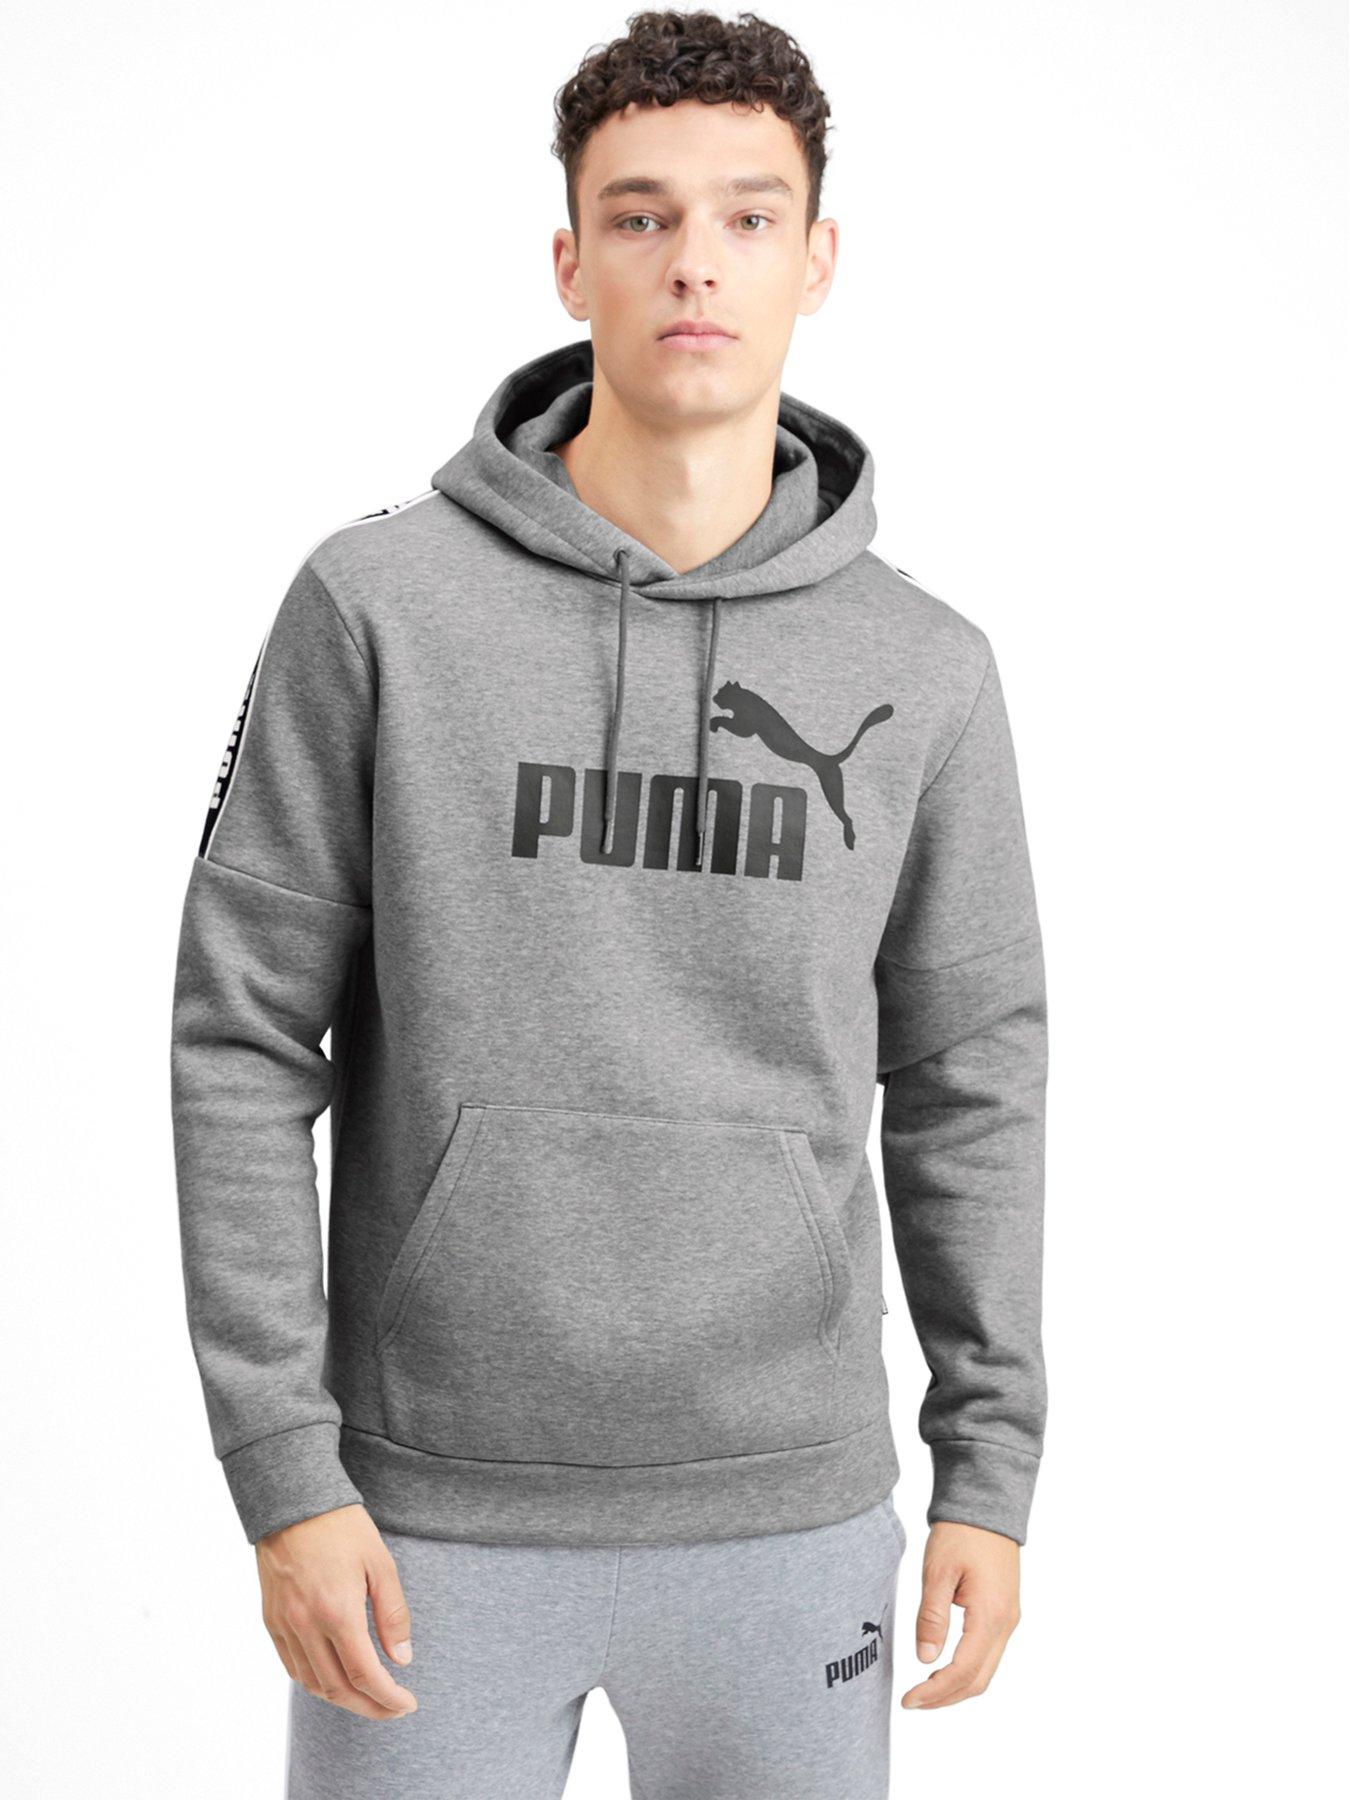 Puma Amplified Hoodie - Grey 